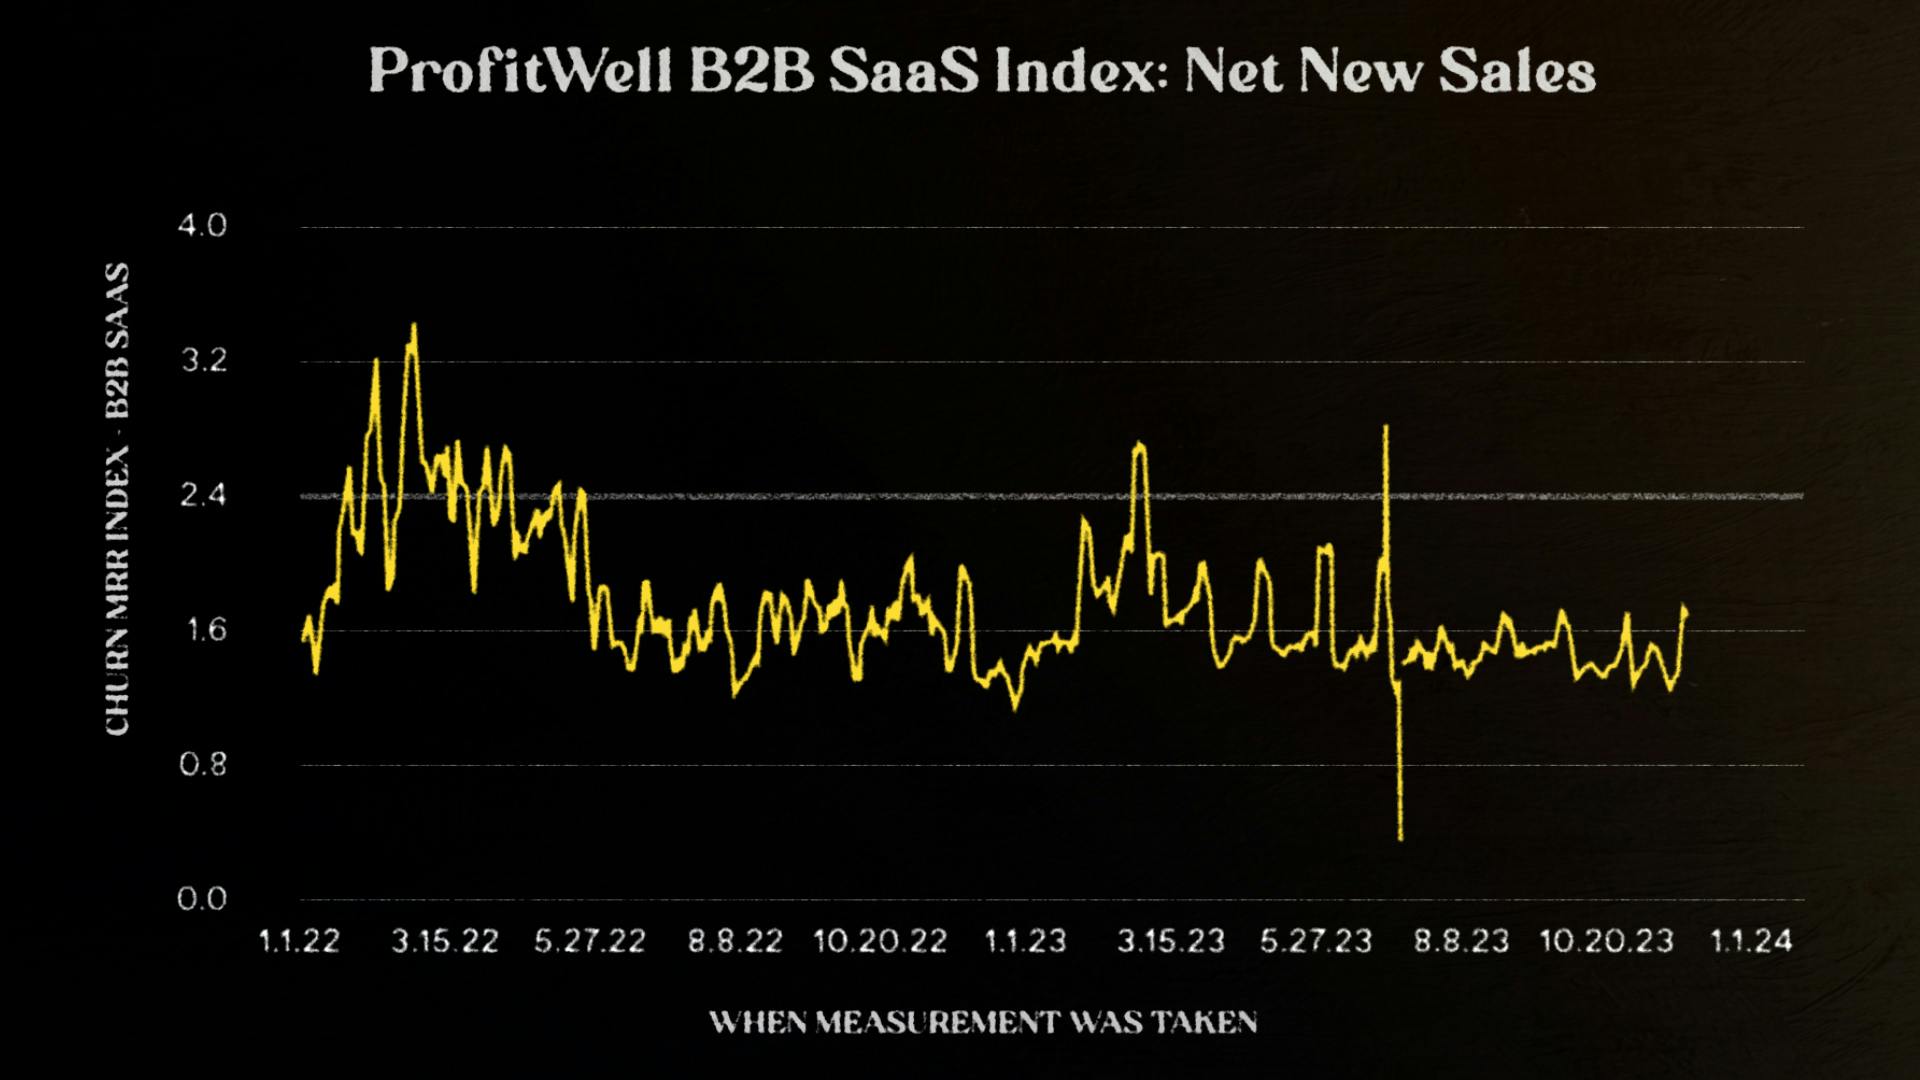 ProfitWell B2B SaaS Index: Net New Sales